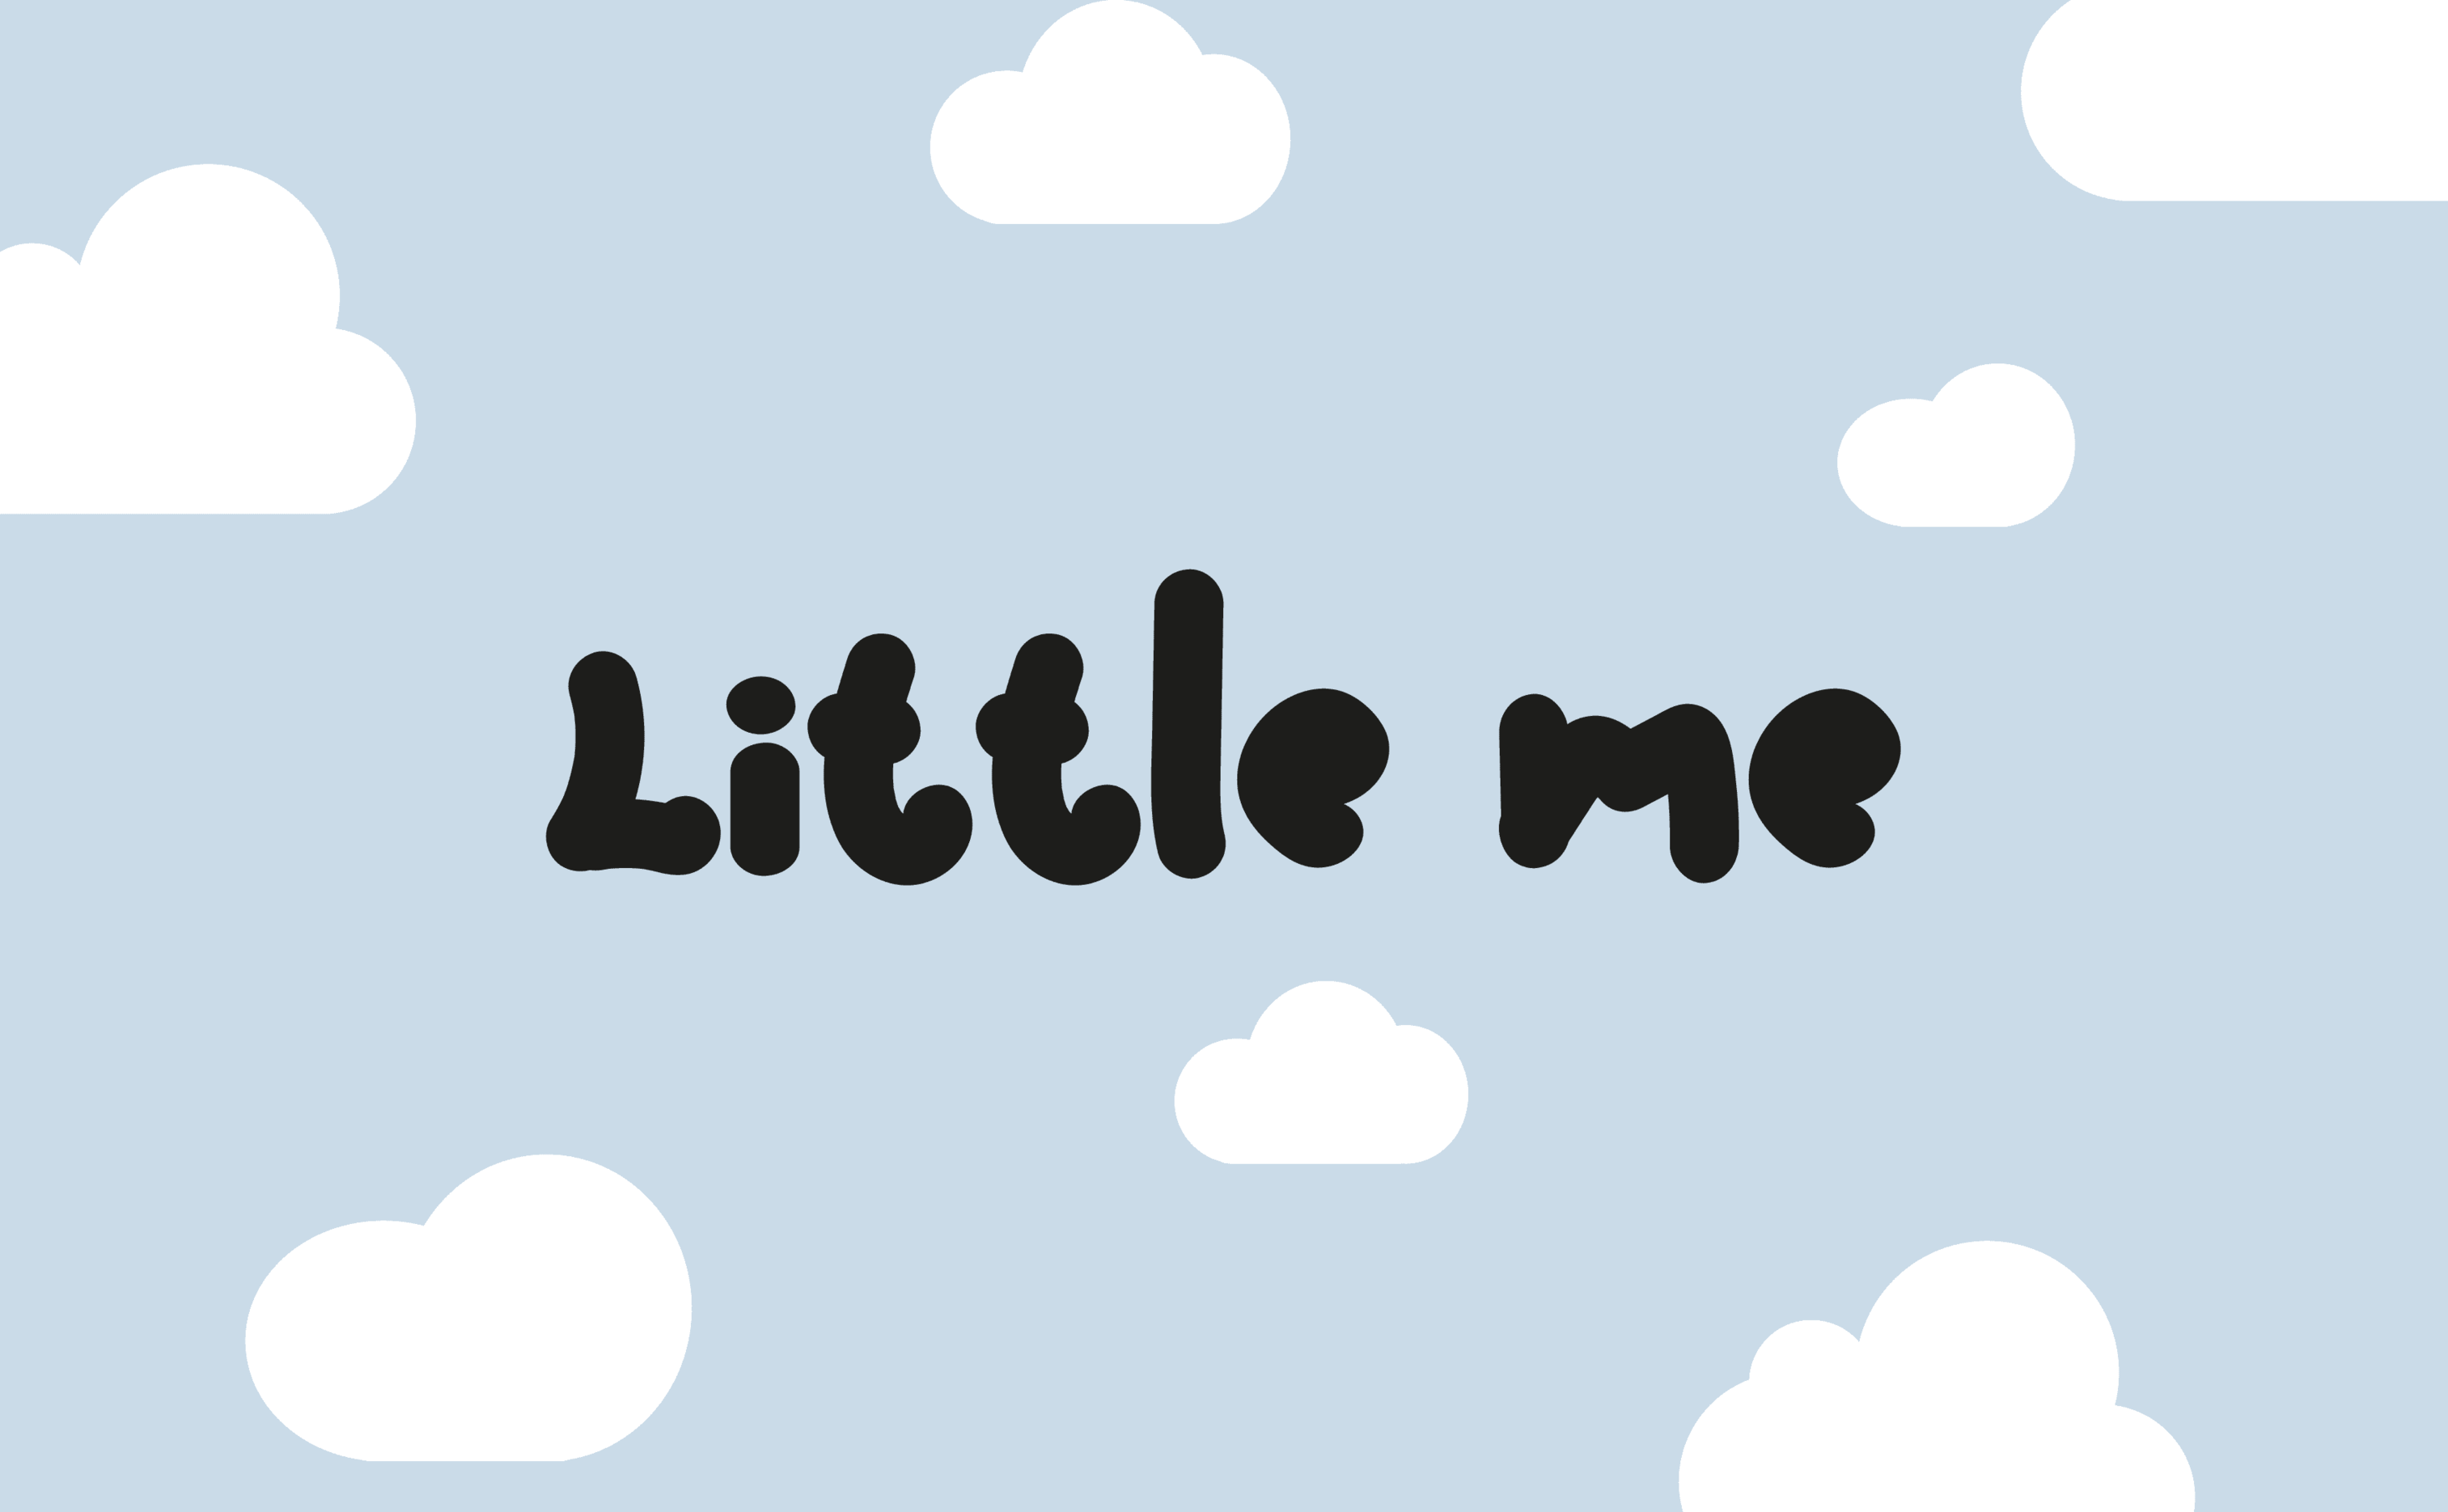 Little me